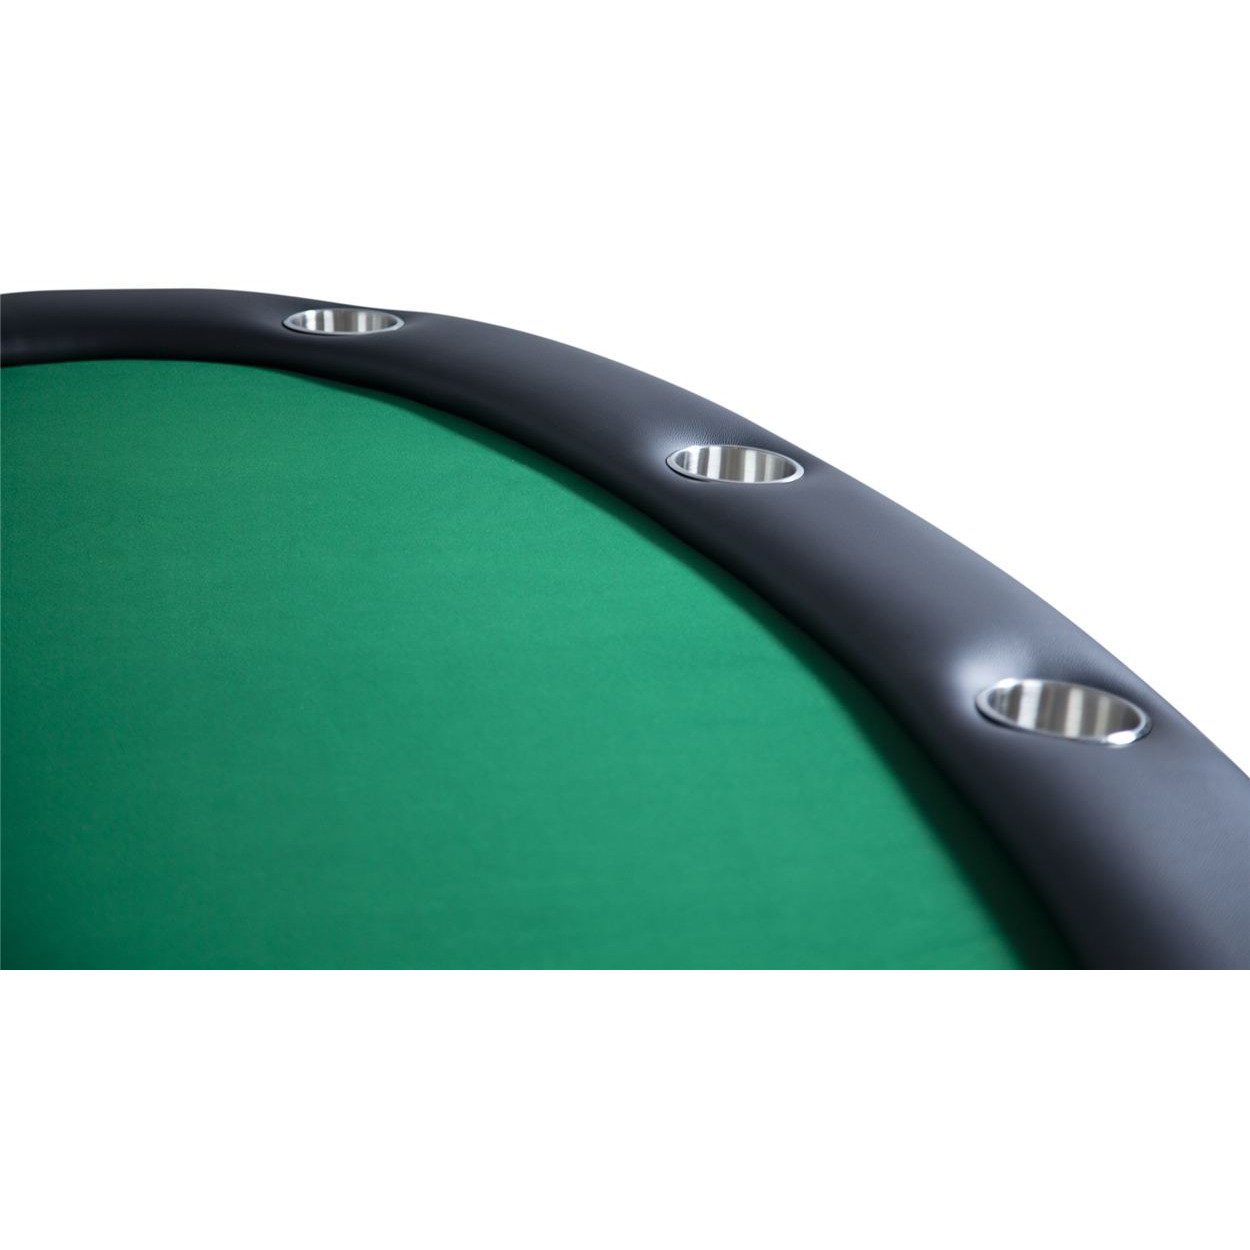 BBO Prestige X Black Poker Table (2BBO-PRESX)